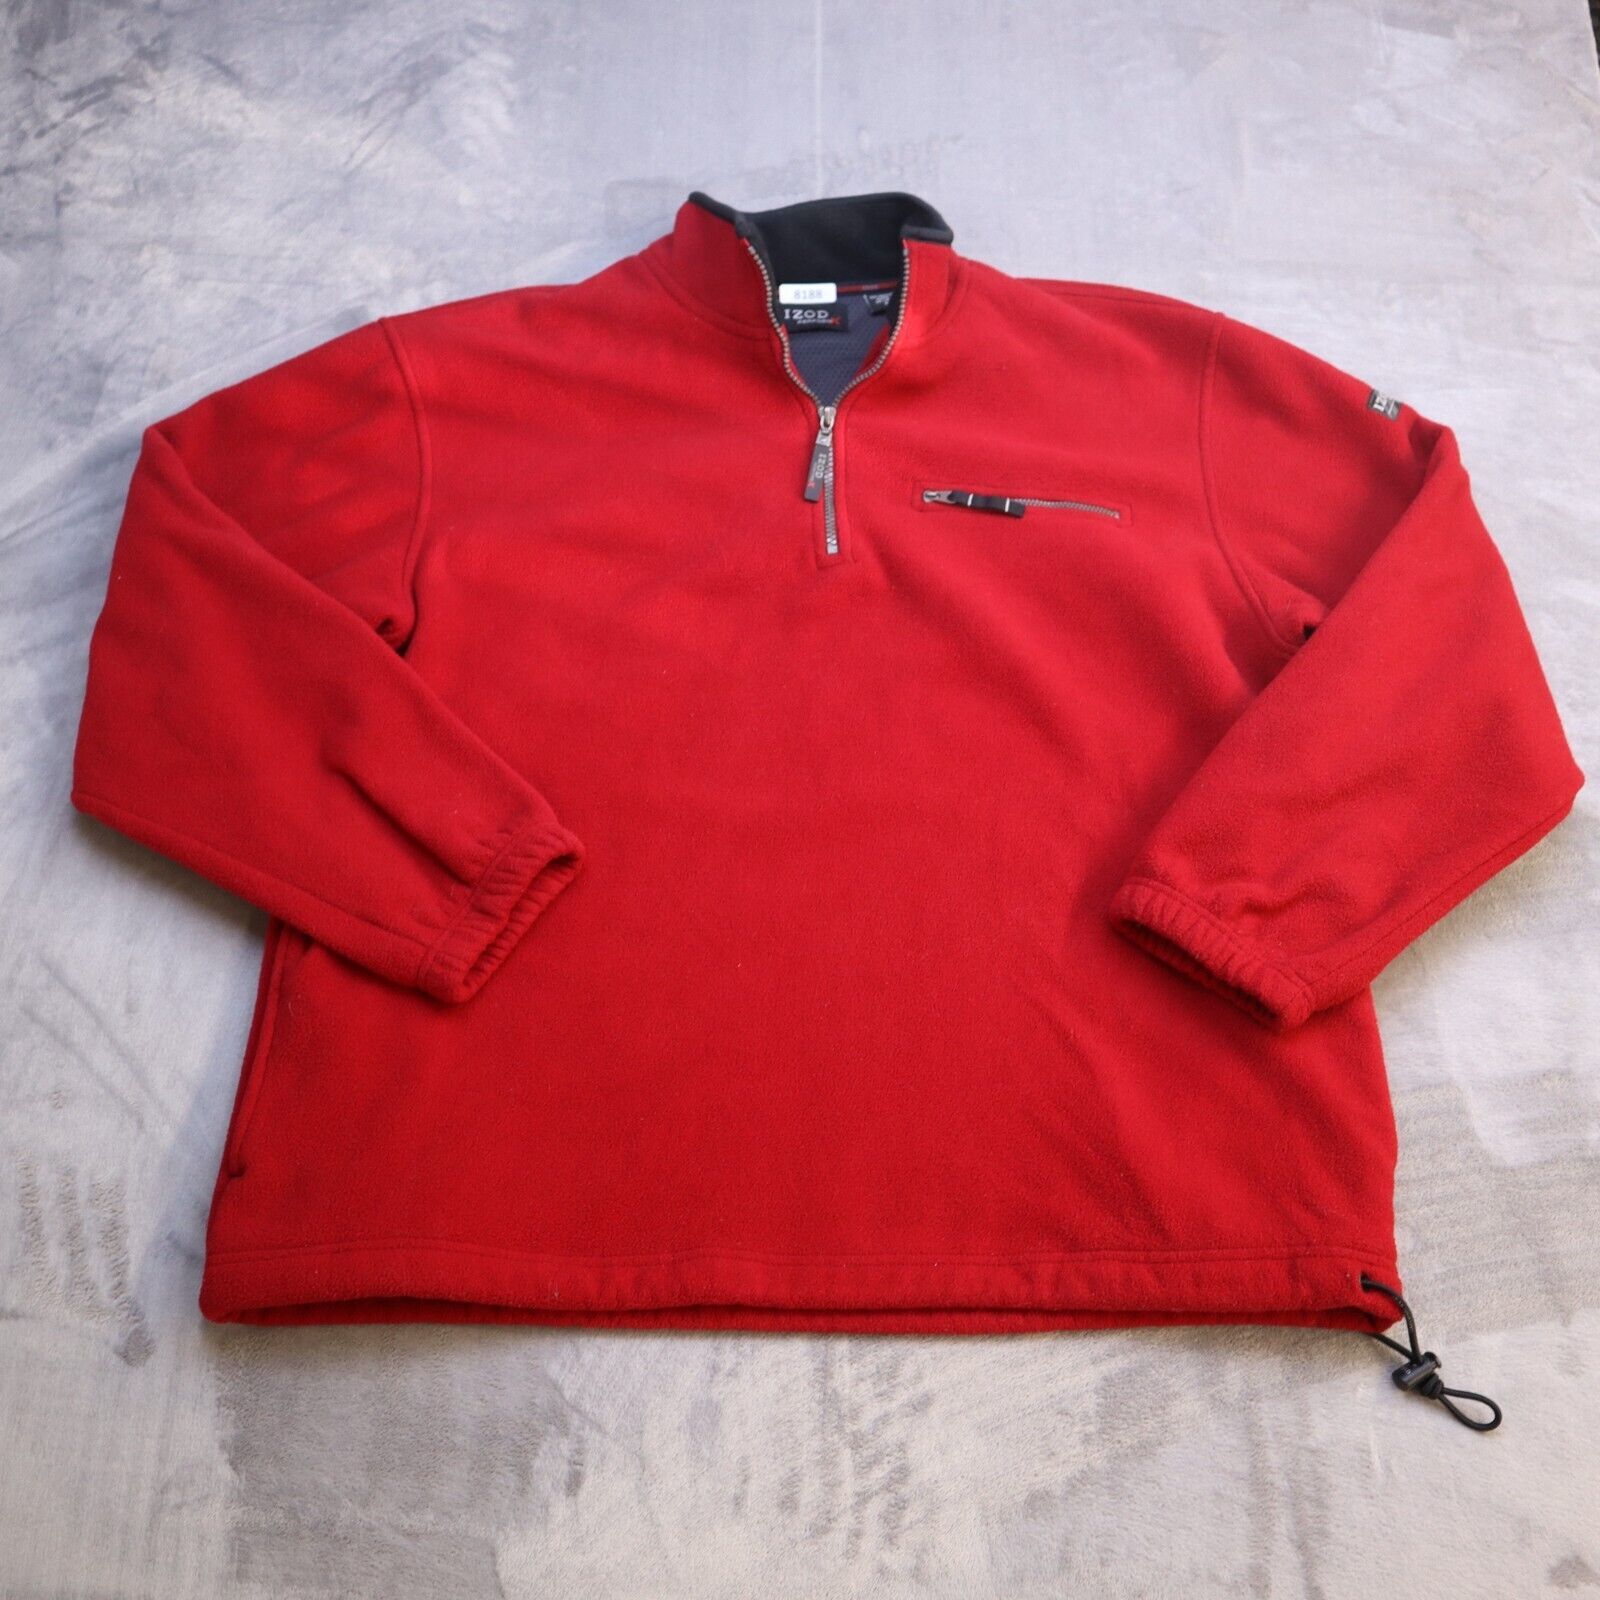 Izod Perform 1/4 Zip Fleece Sweatshirt Red Pullover Casual Performance Mens Xl